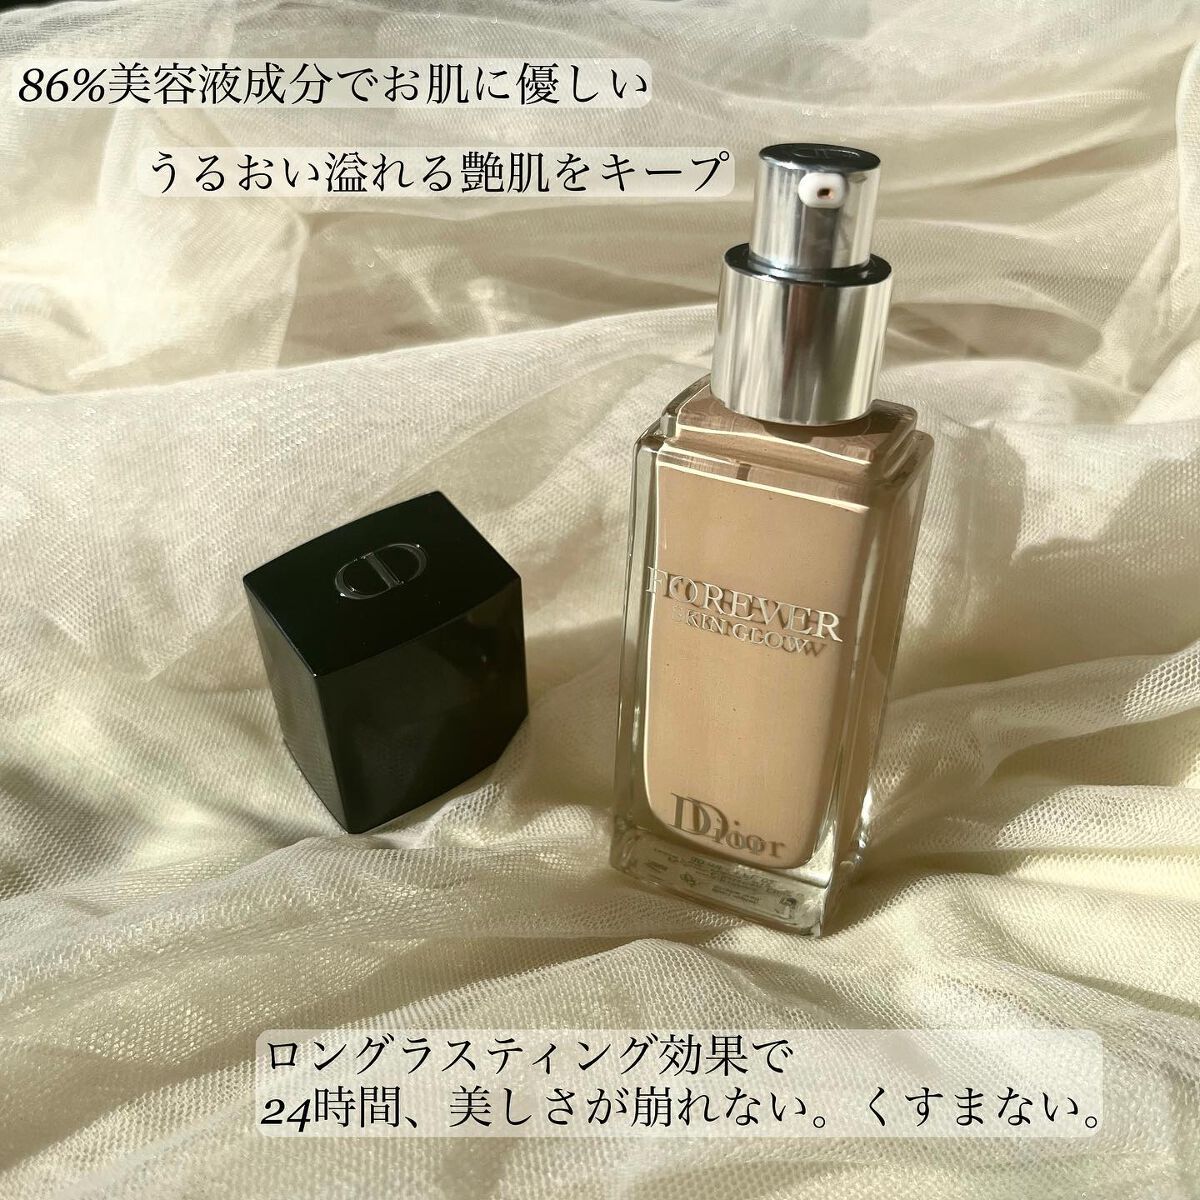 Dior 試供品 15個セット リキッドファンデーション 美容液 香水